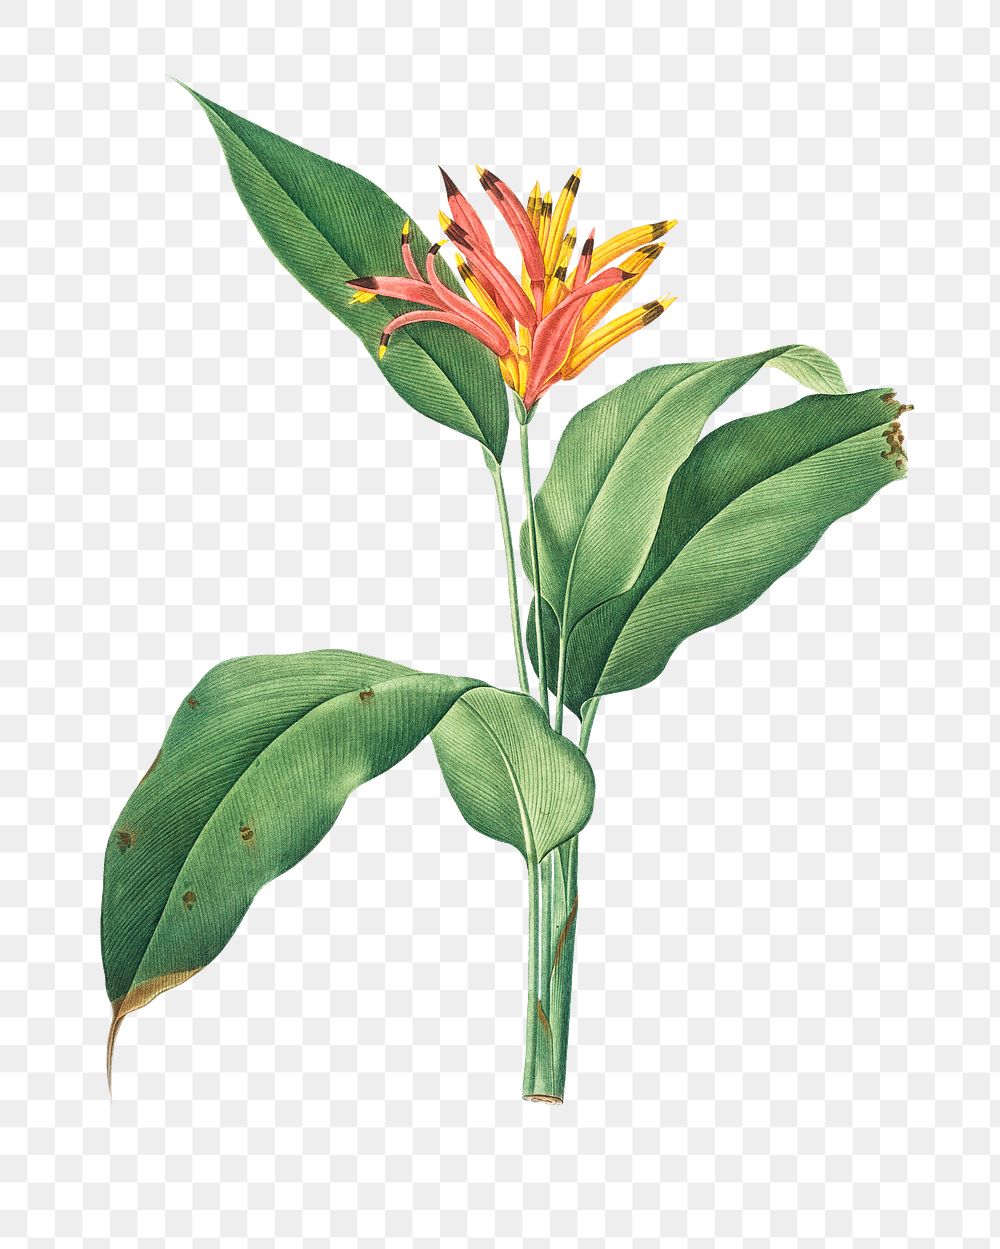 Png tropical flower sticker illustration, transparent background